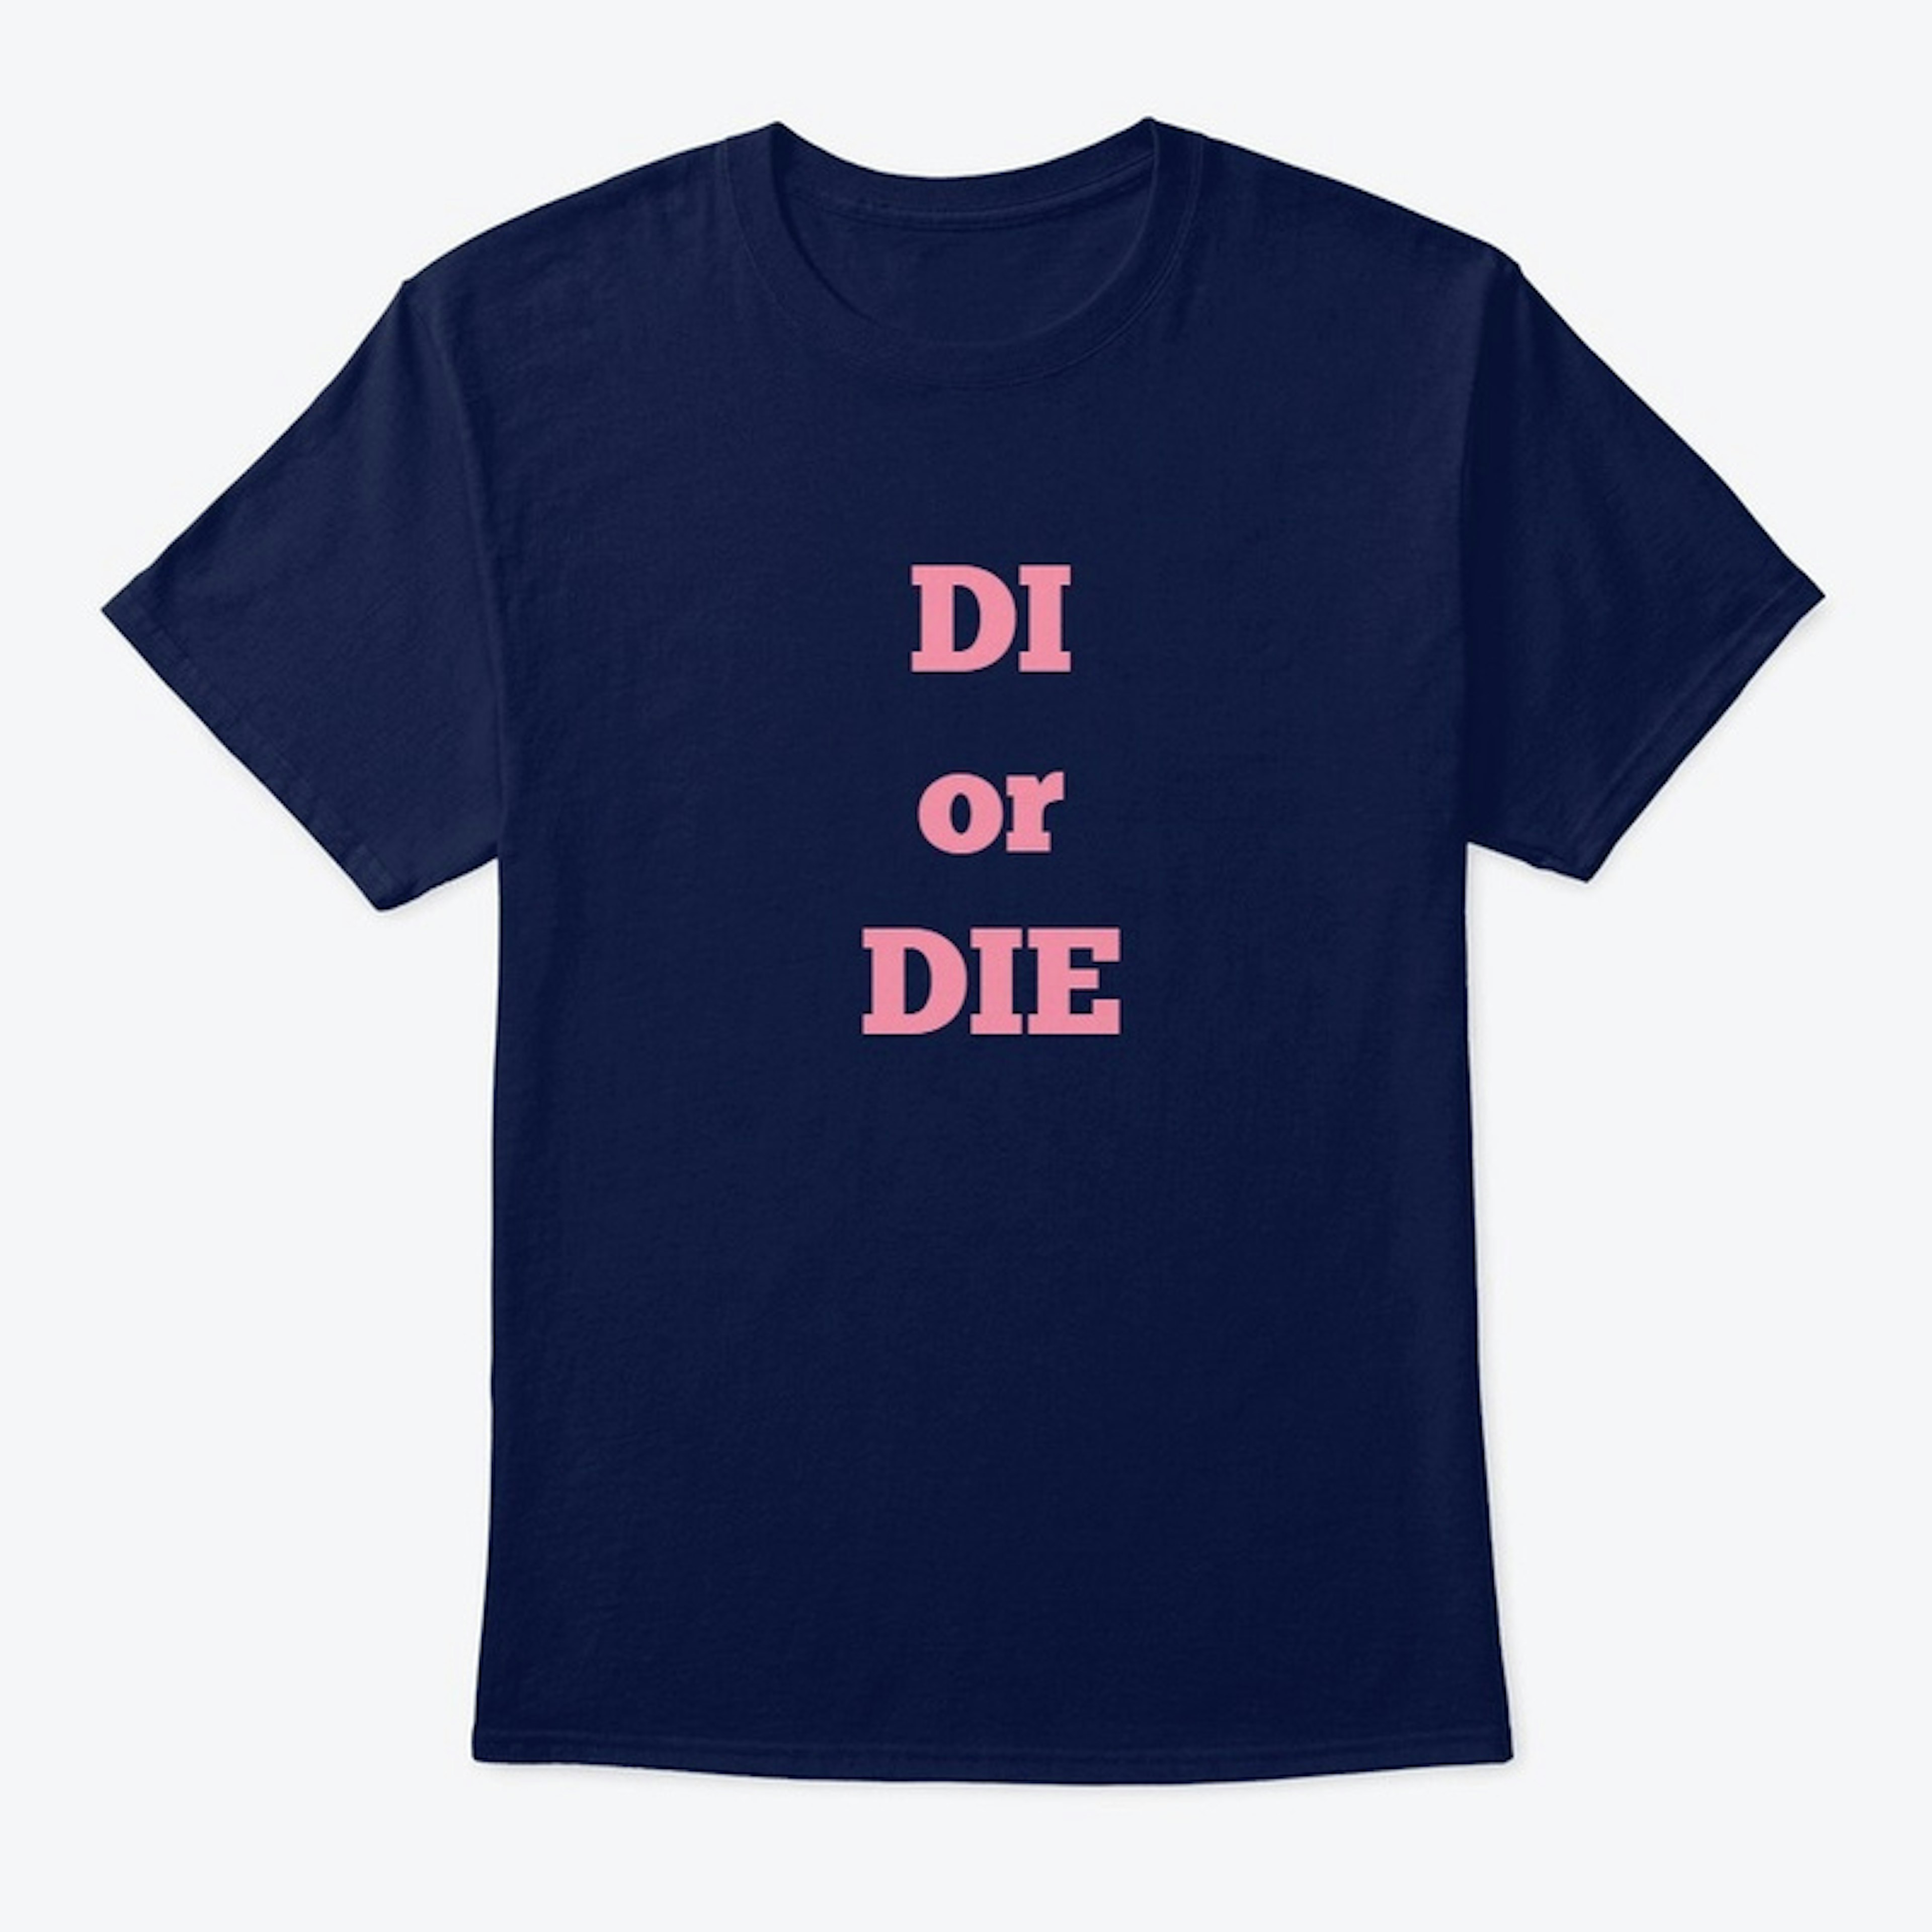 DI or DIE T-shirt